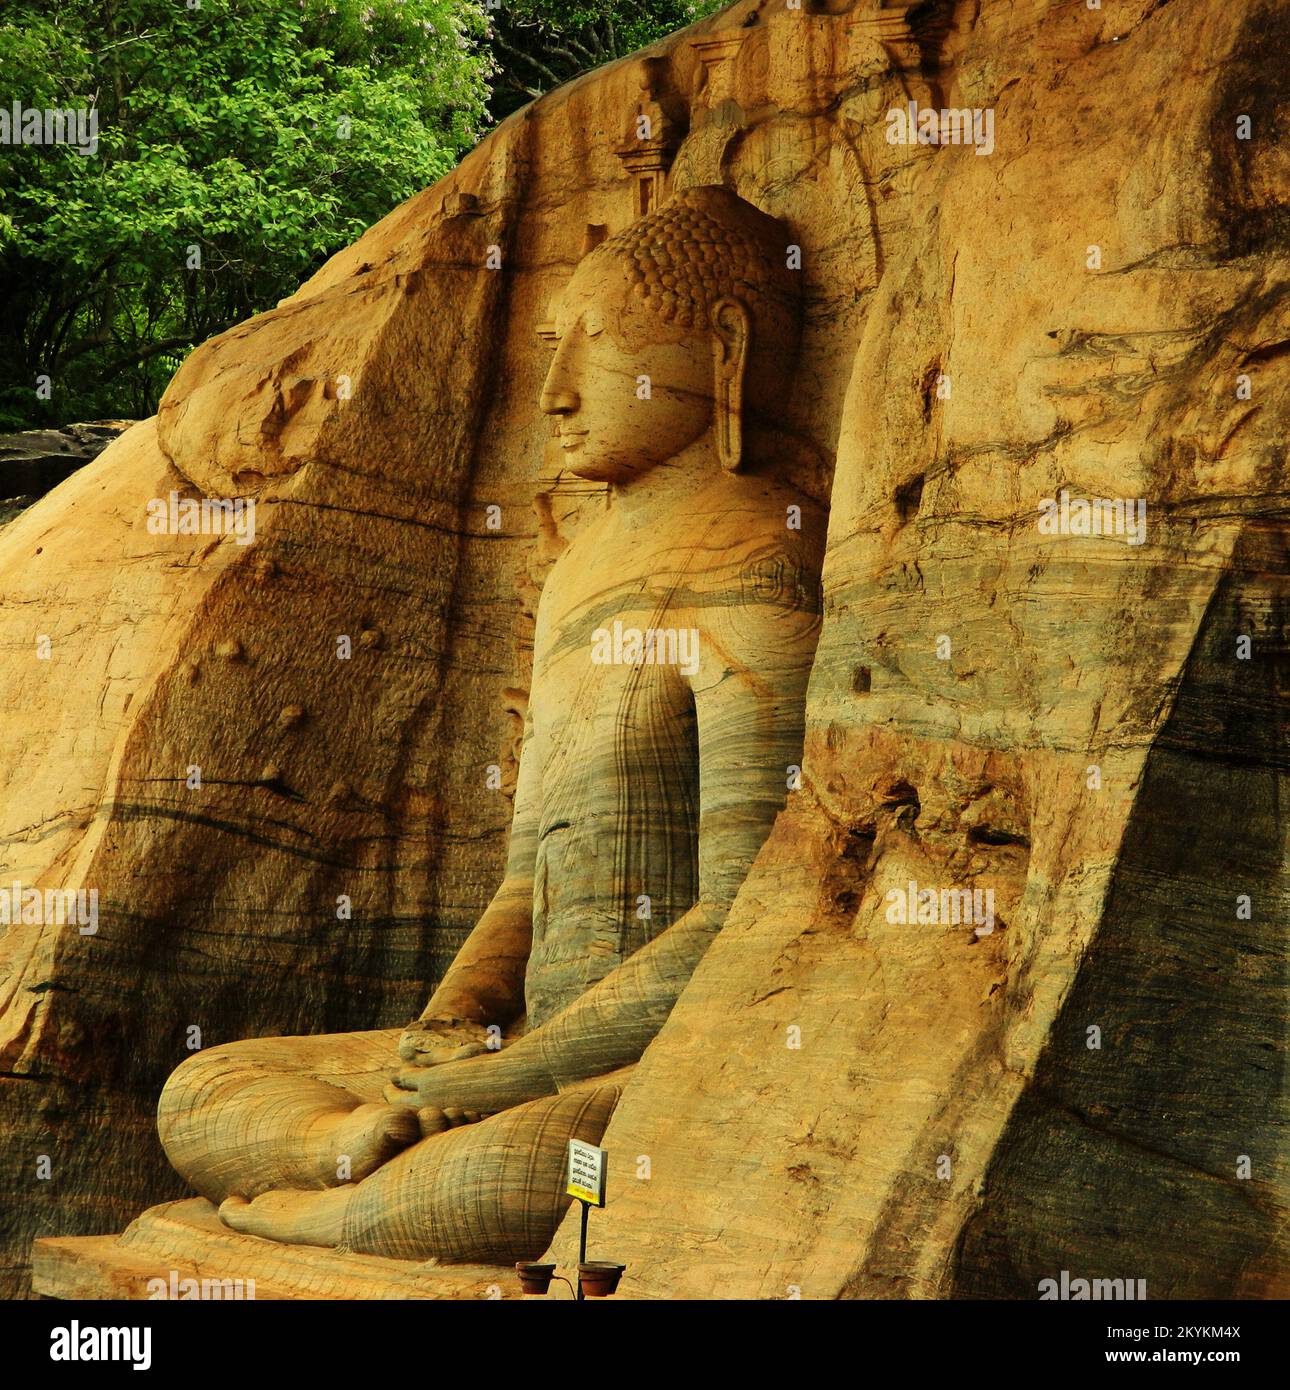 Galviharaya, Utharamaya, Polonnaruwa est célèbre pour ses trois statues de Bouddha, sculptées dans un rocher de gneiss de granit. Trois portraits de Bouddha, assis, incliné et debout sont vivants comme. Les sculptures smartness peuvent être vues à travers la douce, translucide sivura. Les flottes de la sivura comme les vagues de la mer. Polonnaruwa, Sri Lanka. Banque D'Images